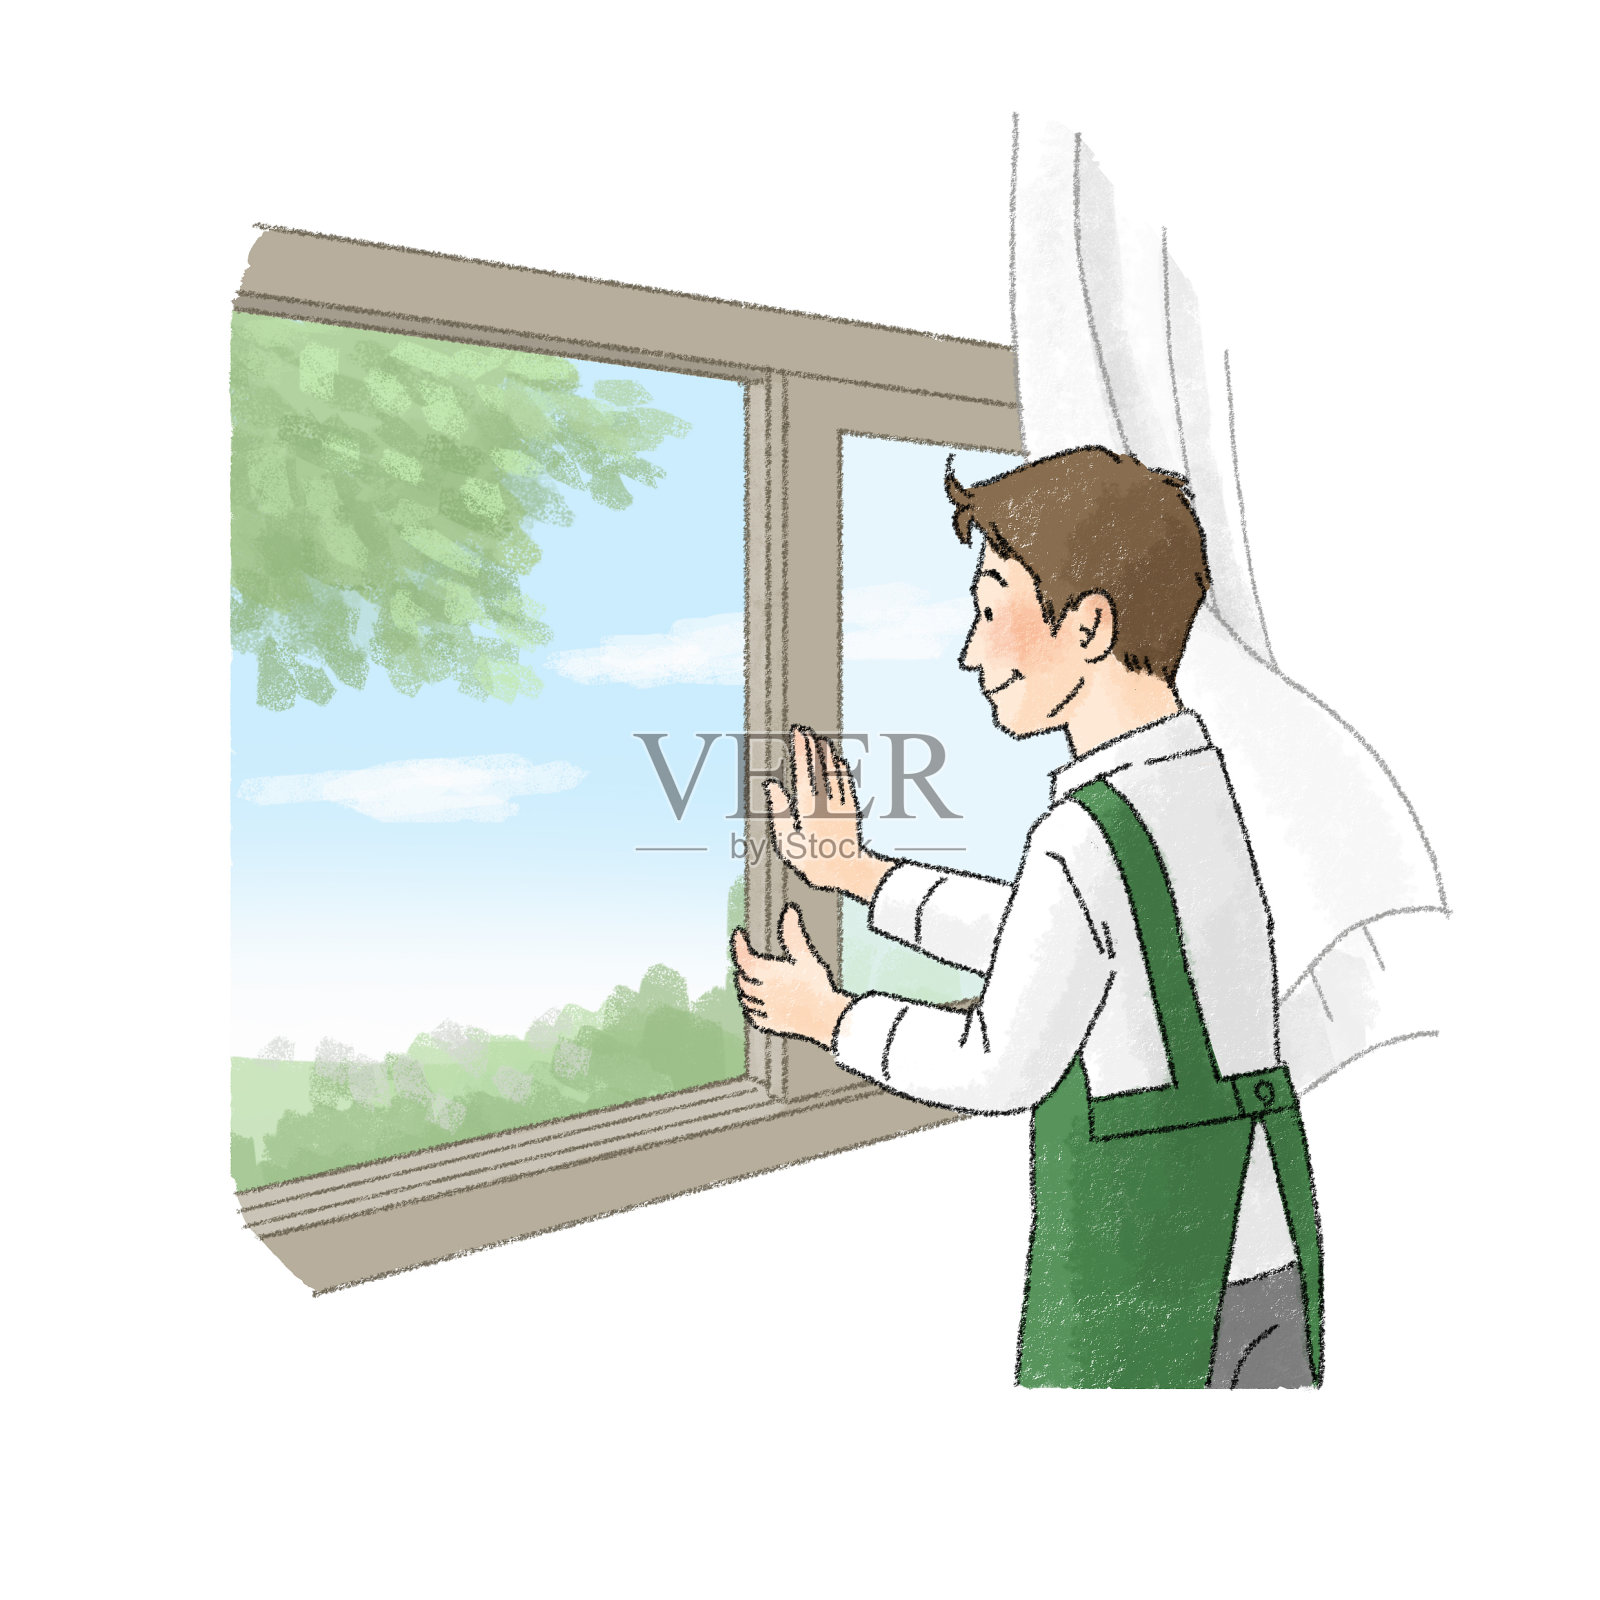 一个人打开窗户和通风的插图(男职员)插画图片素材